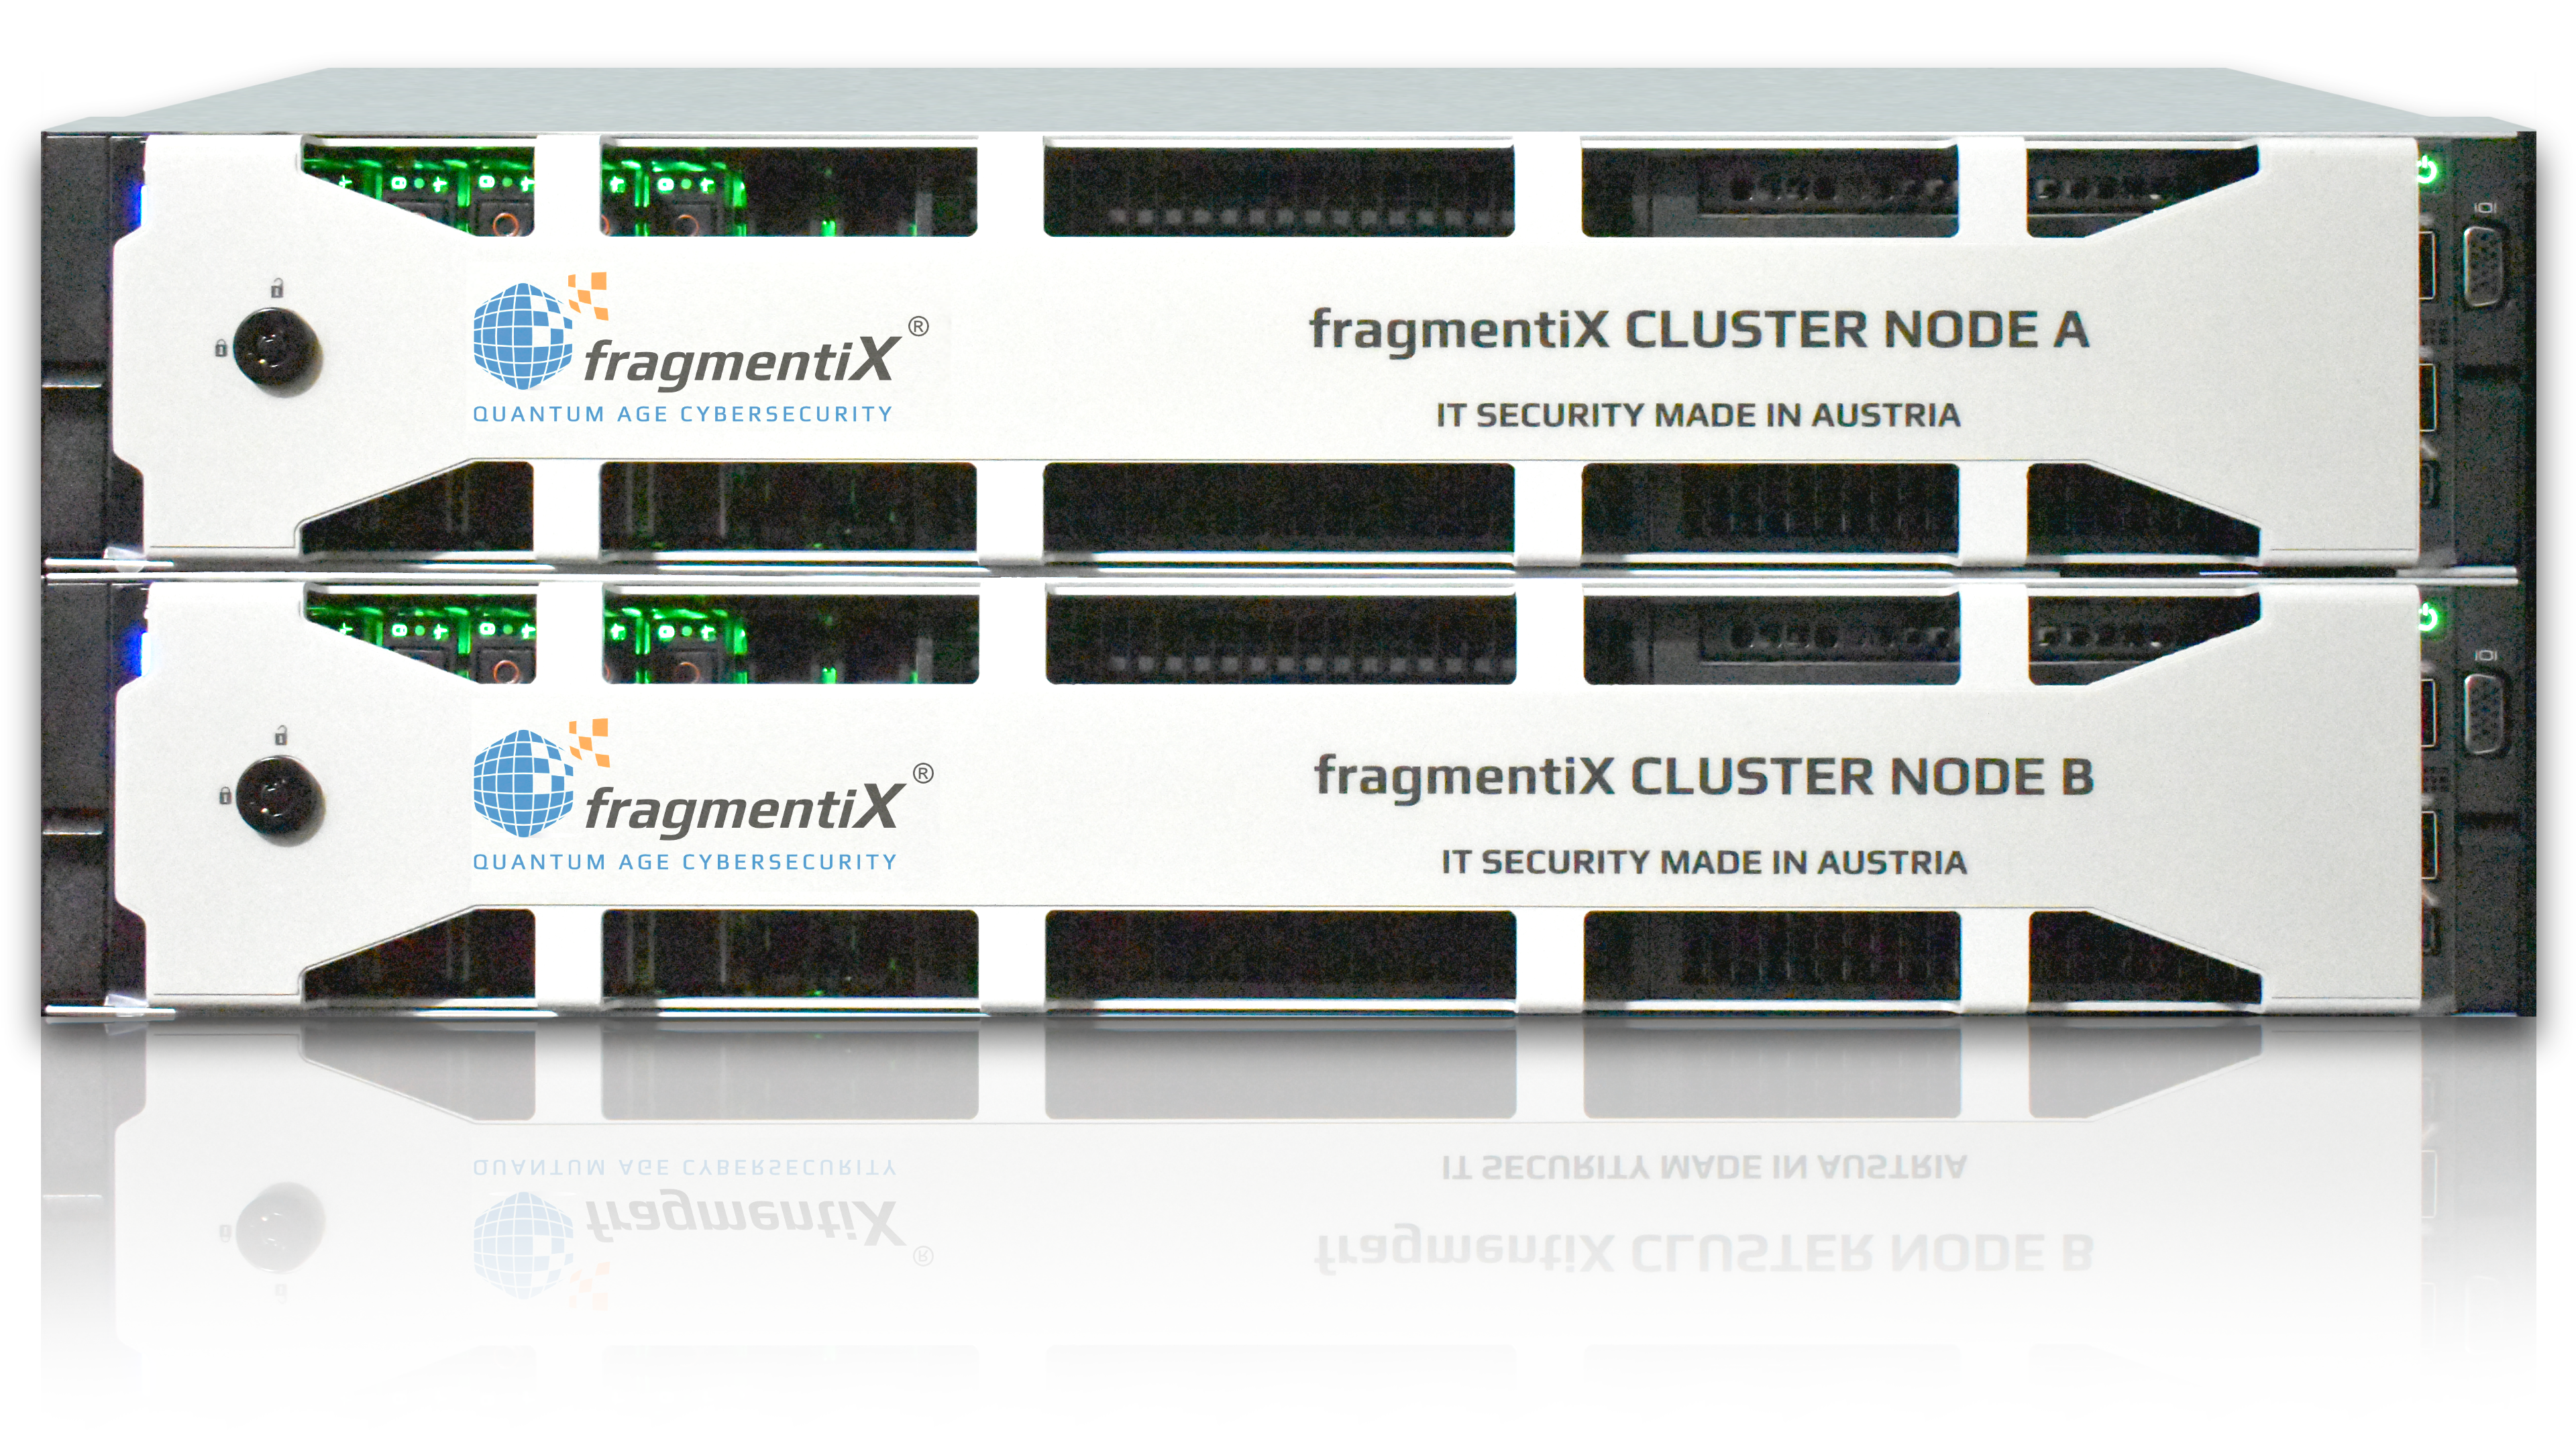 fragmentiX CLUSTER Nodo A y B